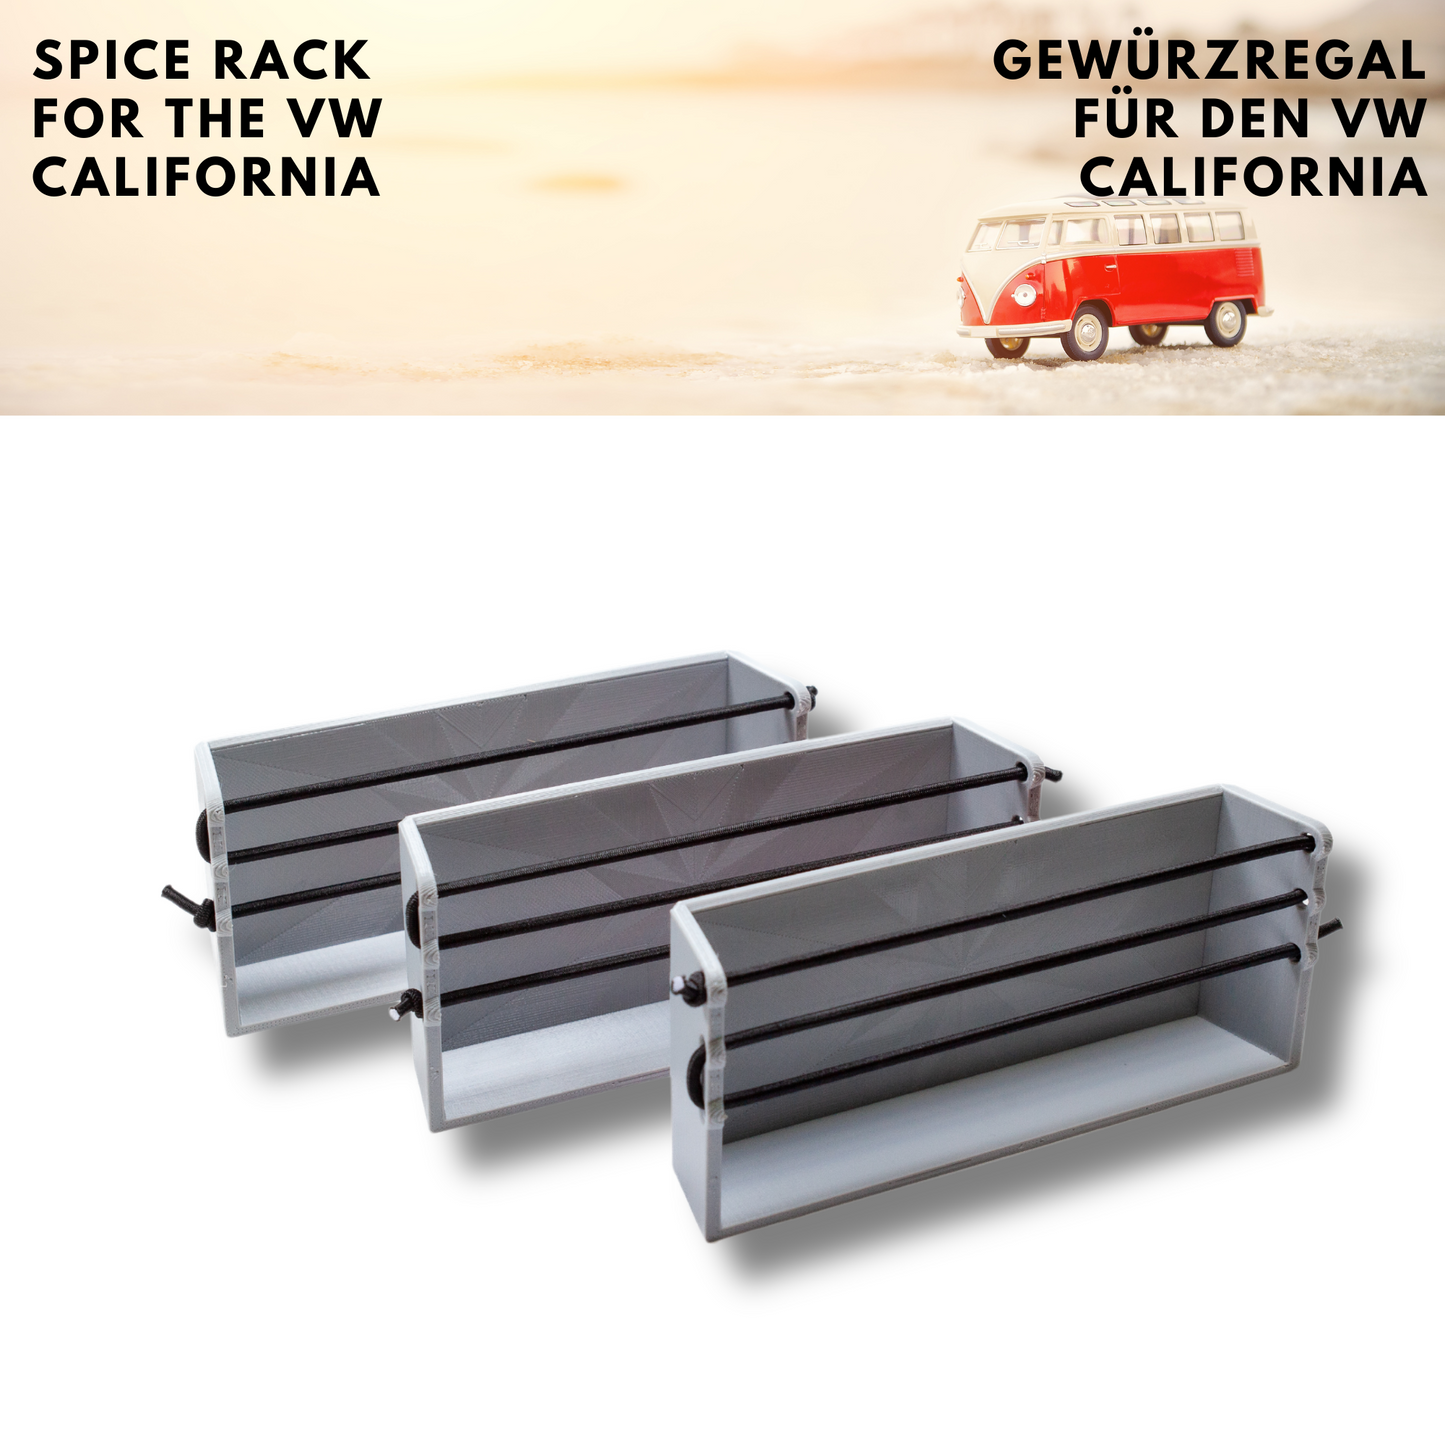 Gewürzregal für VW California Ocean, Coast, Comfort Line T5, T5.1, T5.2 und T6